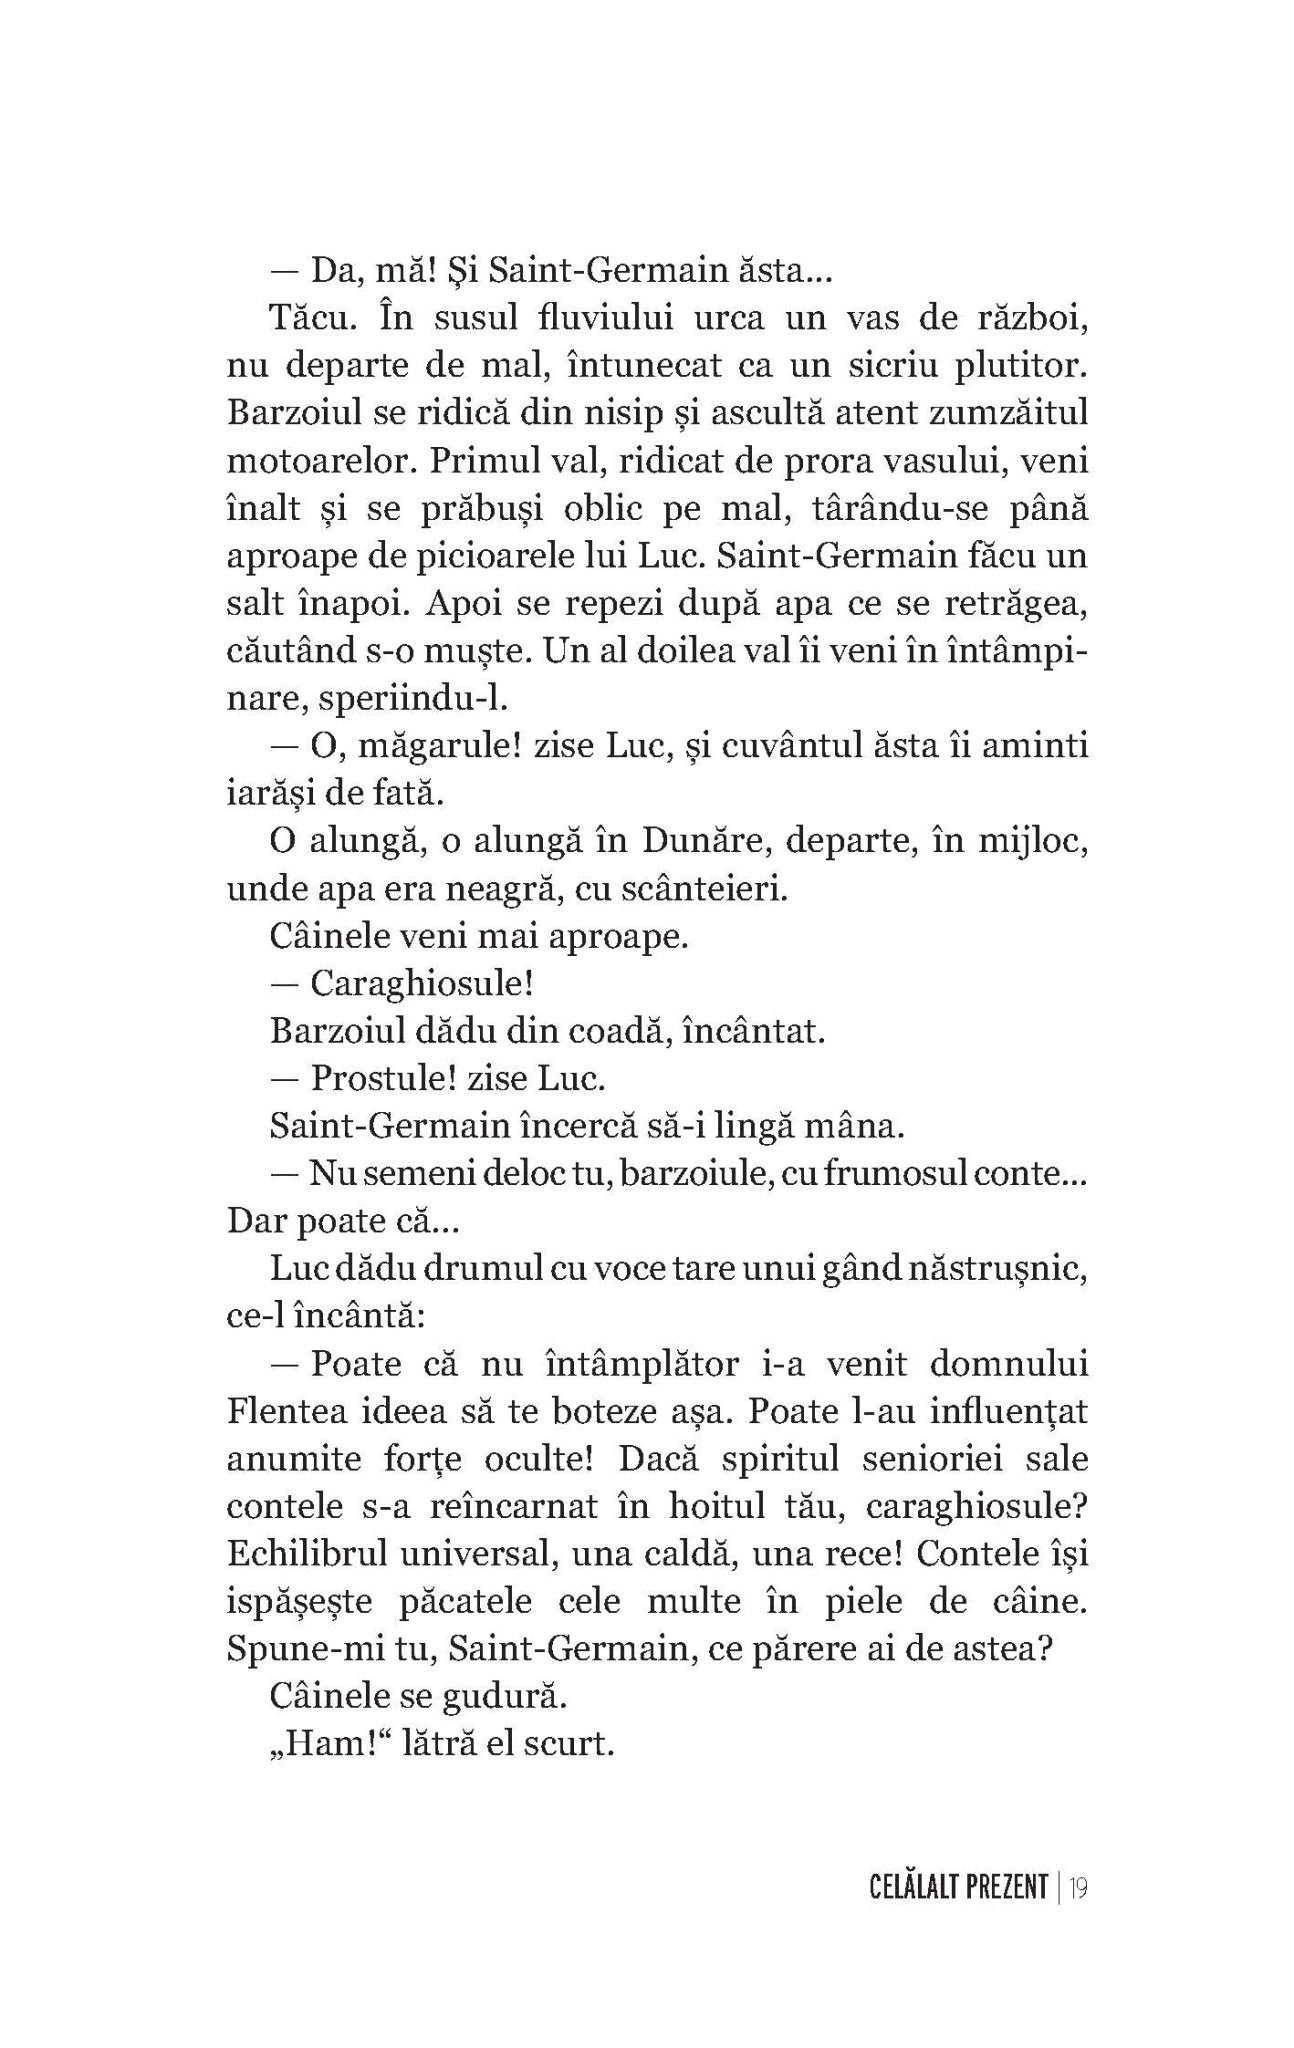 Celalalt prezent Intoarcerea focului - Ed. digitala - PDF - Publisol.ro